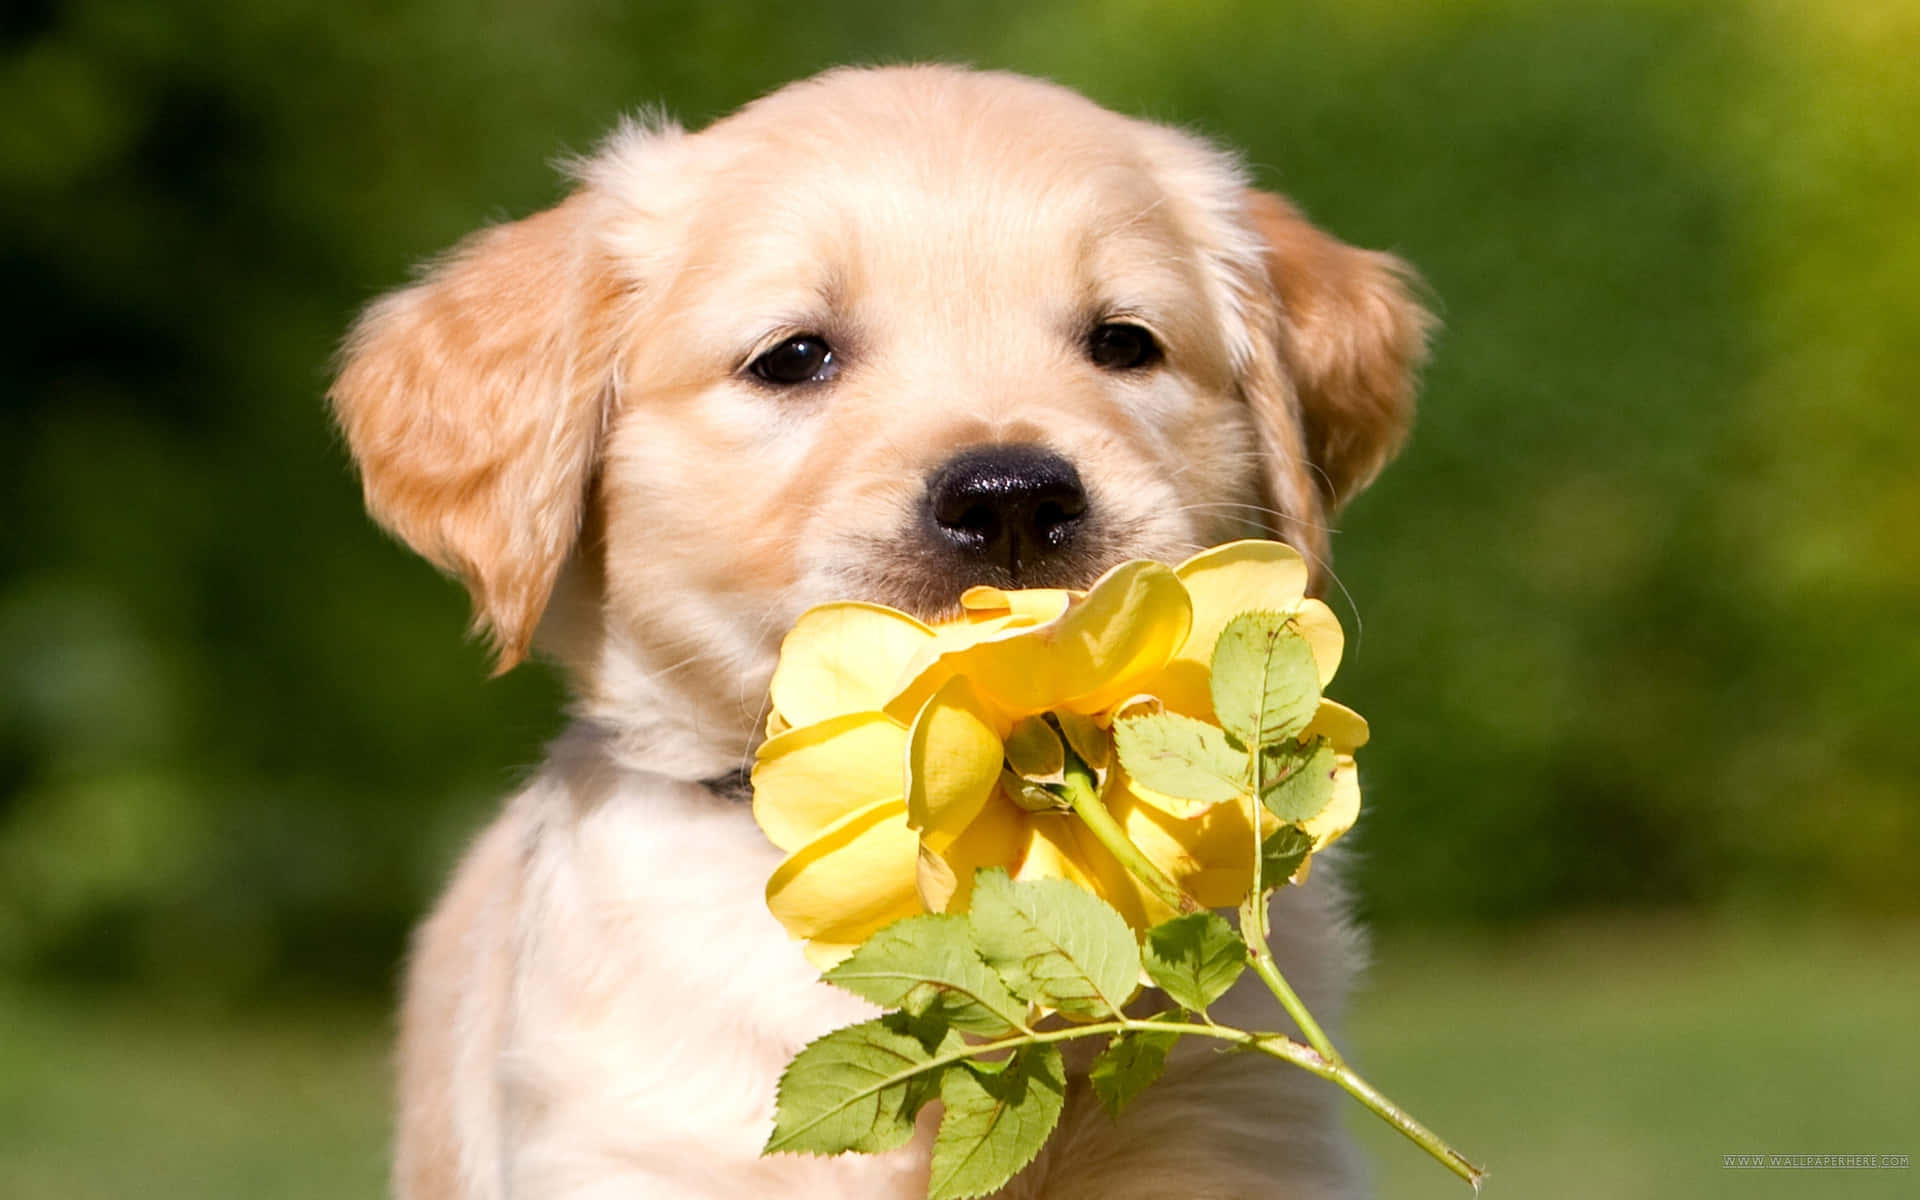 Adorable Golden Retriever Puppy Ready to Play